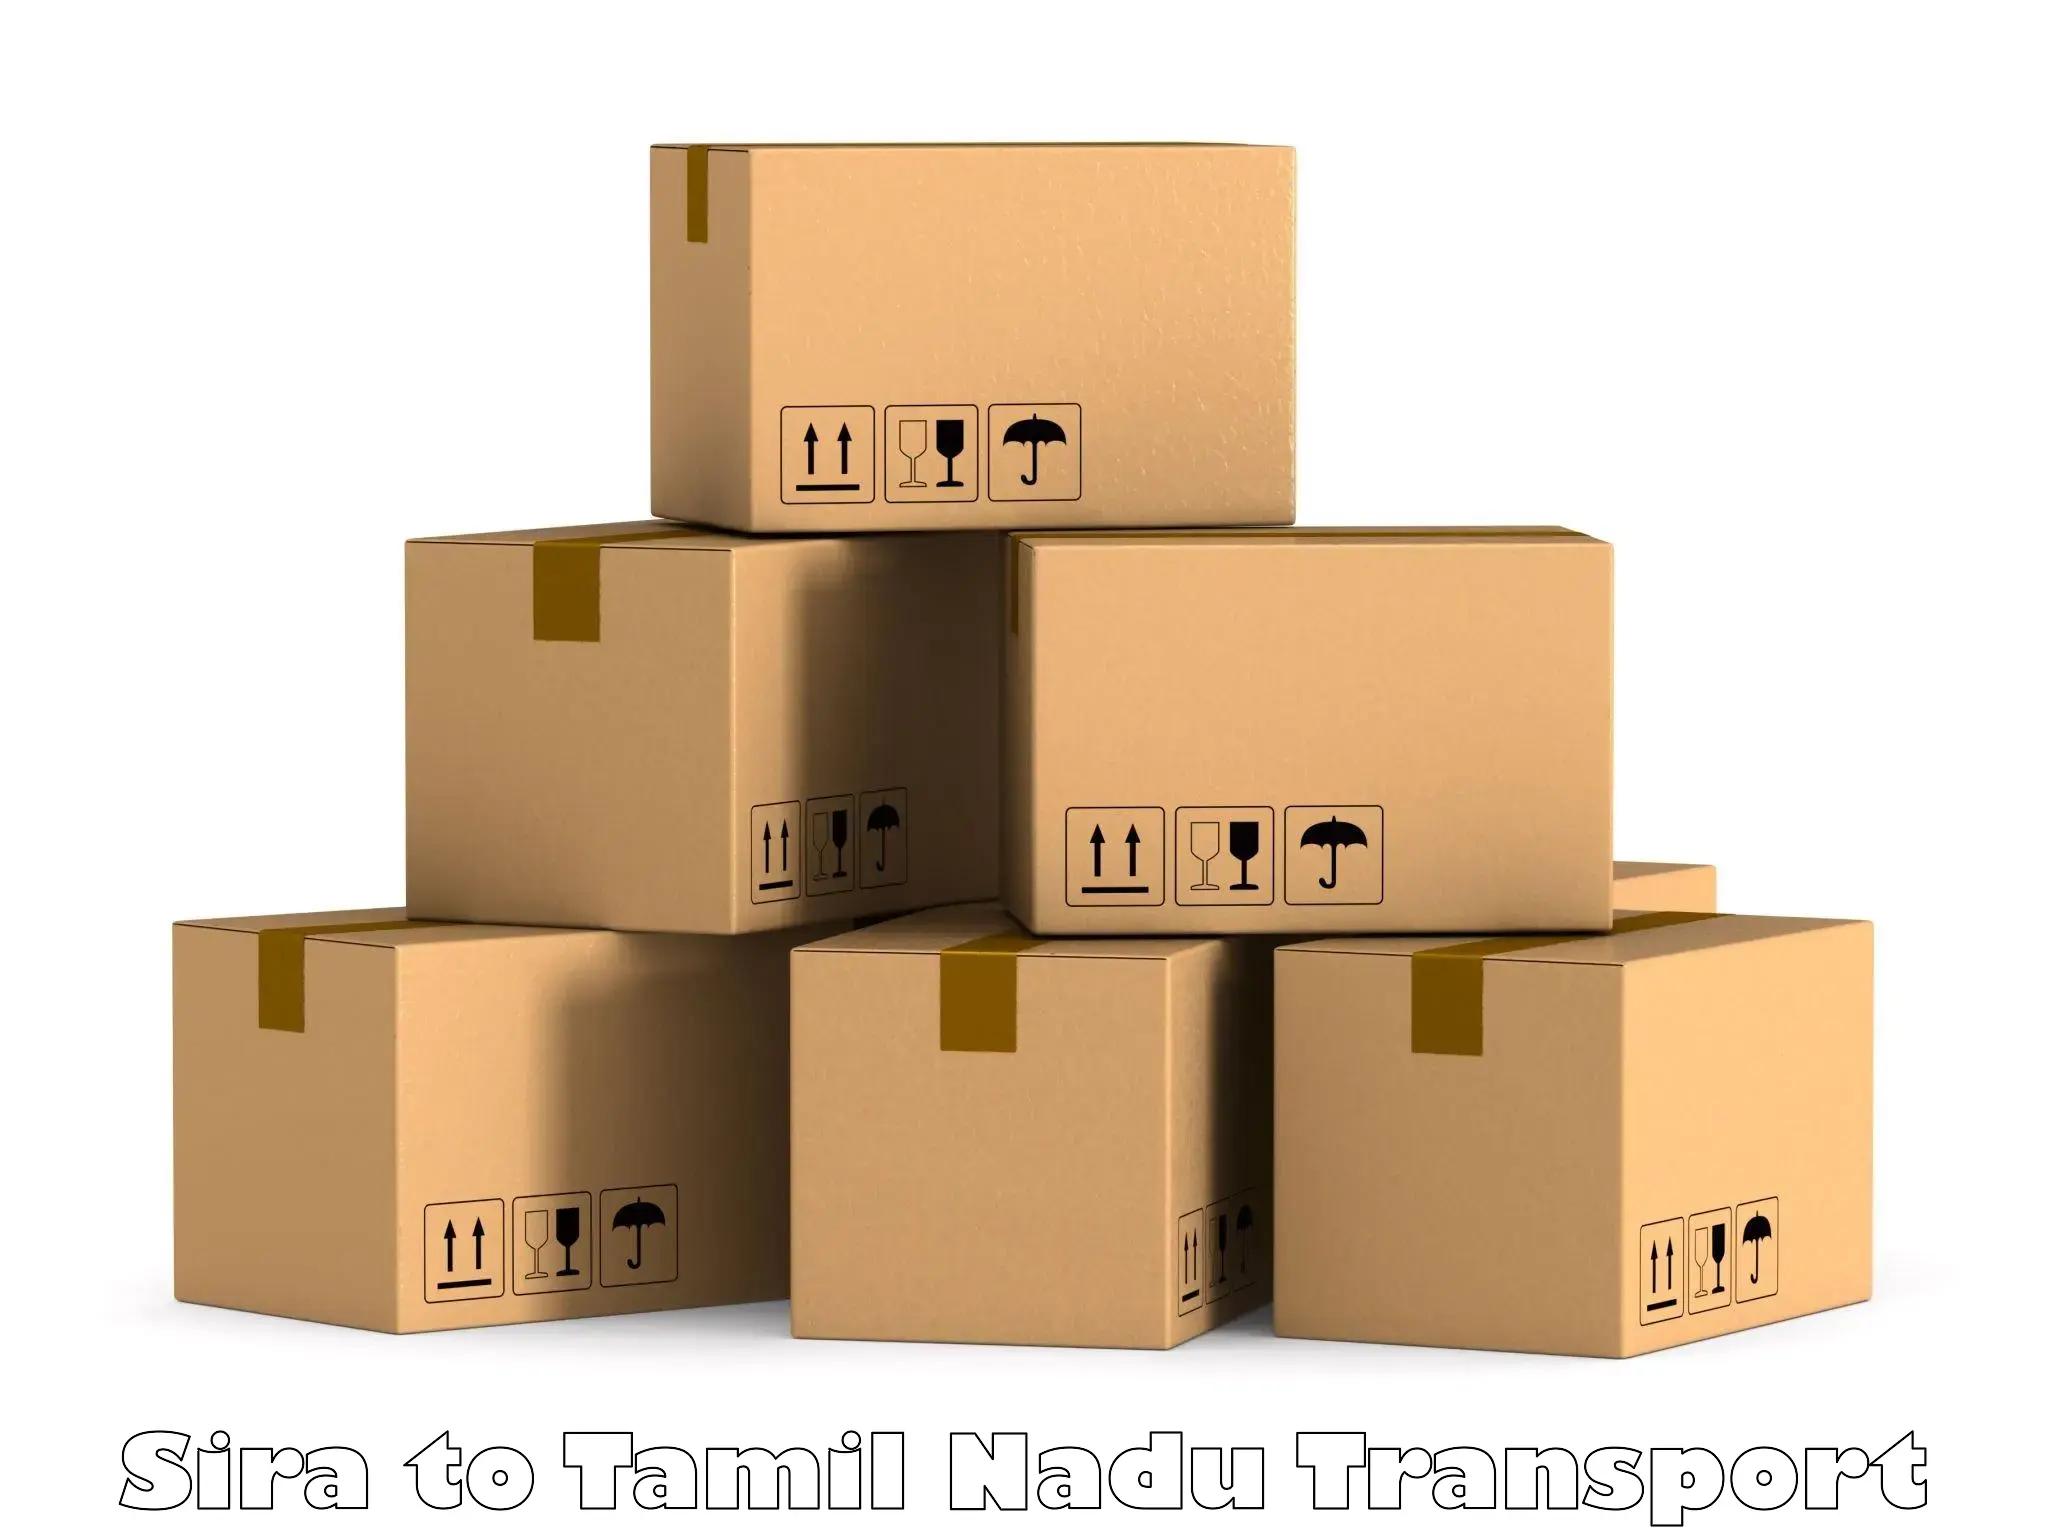 International cargo transportation services Sira to Tiruturaipundi